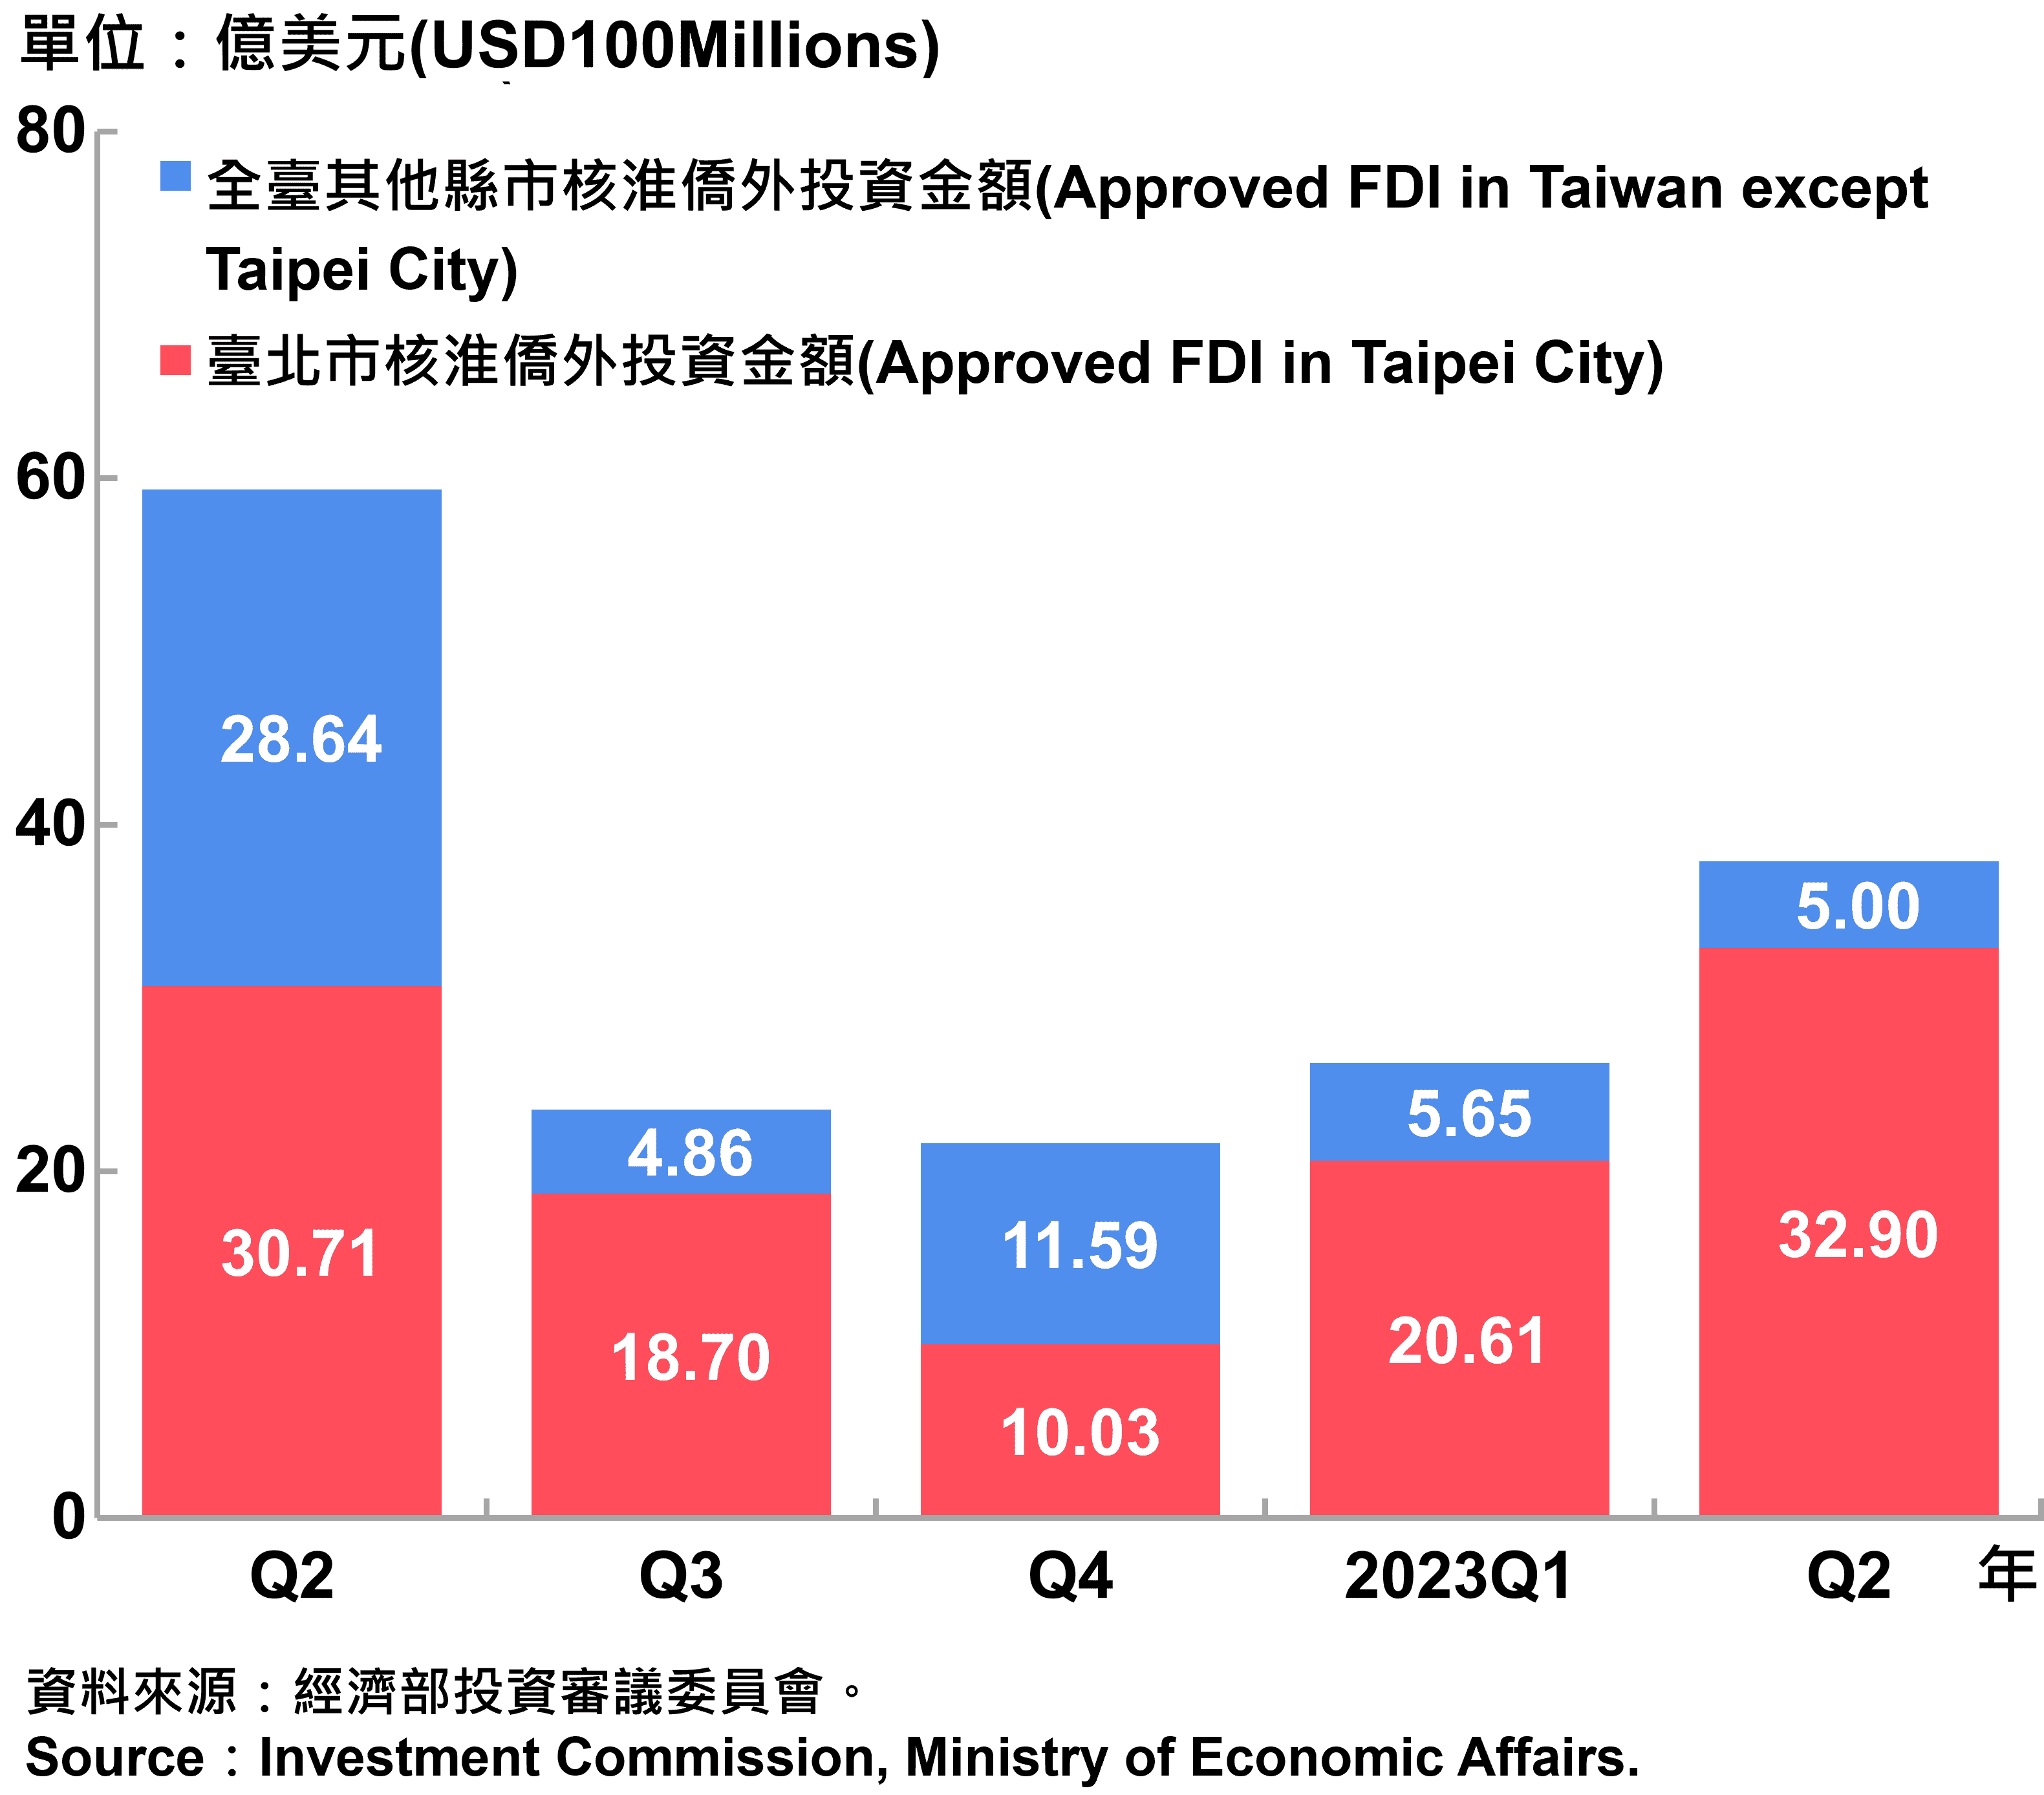 臺北市與全國僑外投資金額—2023Q2 Foreign Direct Investment（FDI）in Taipei City and Taiwan—2023Q2